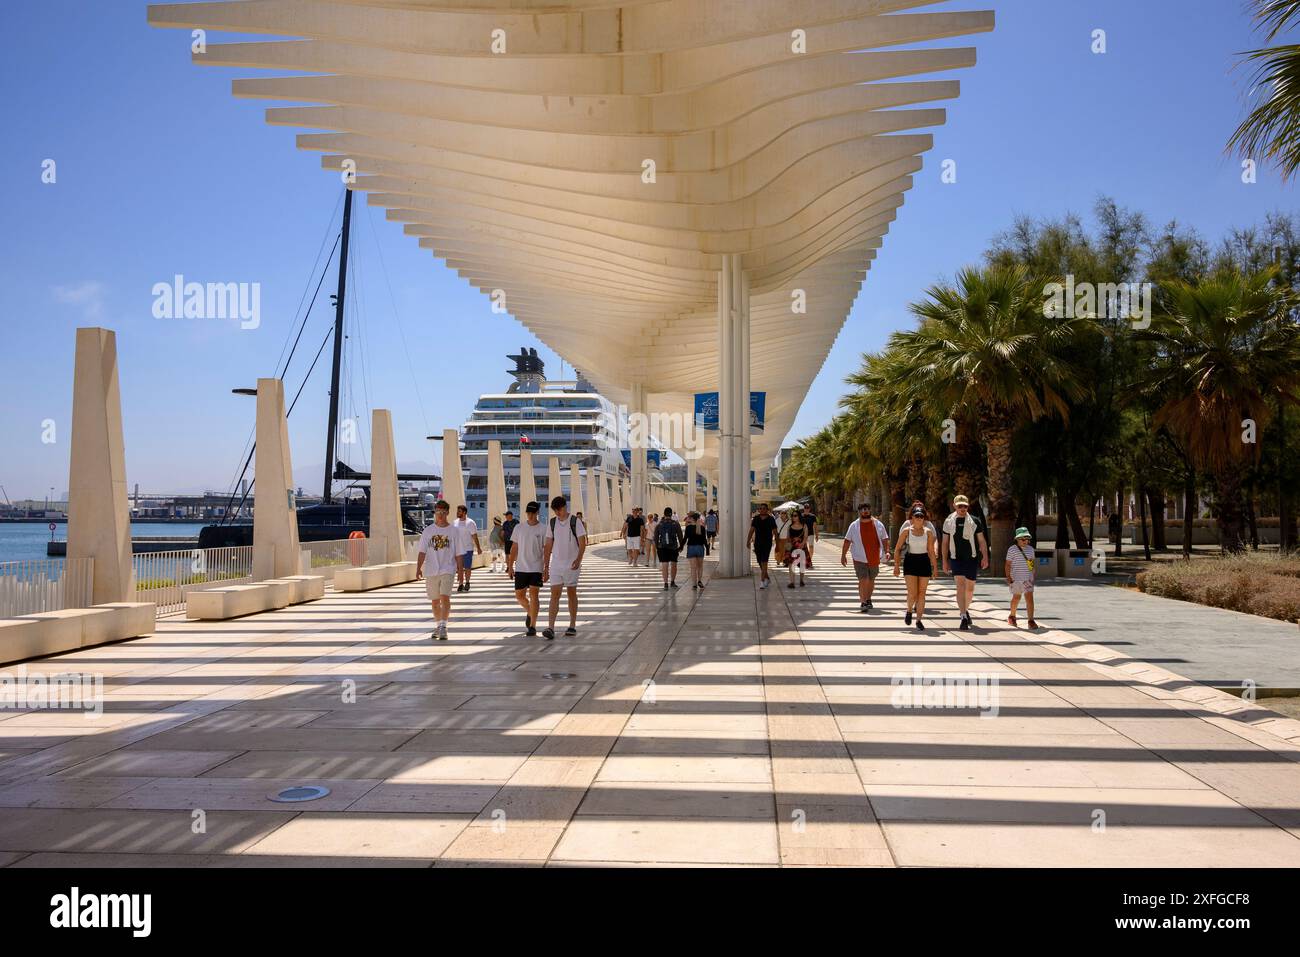 Il design del tetto a doghe si estende sul passaggio pedonale del molo moderno ed elegante nel porto di Malaga, Costa del Sol, Spagna Foto Stock